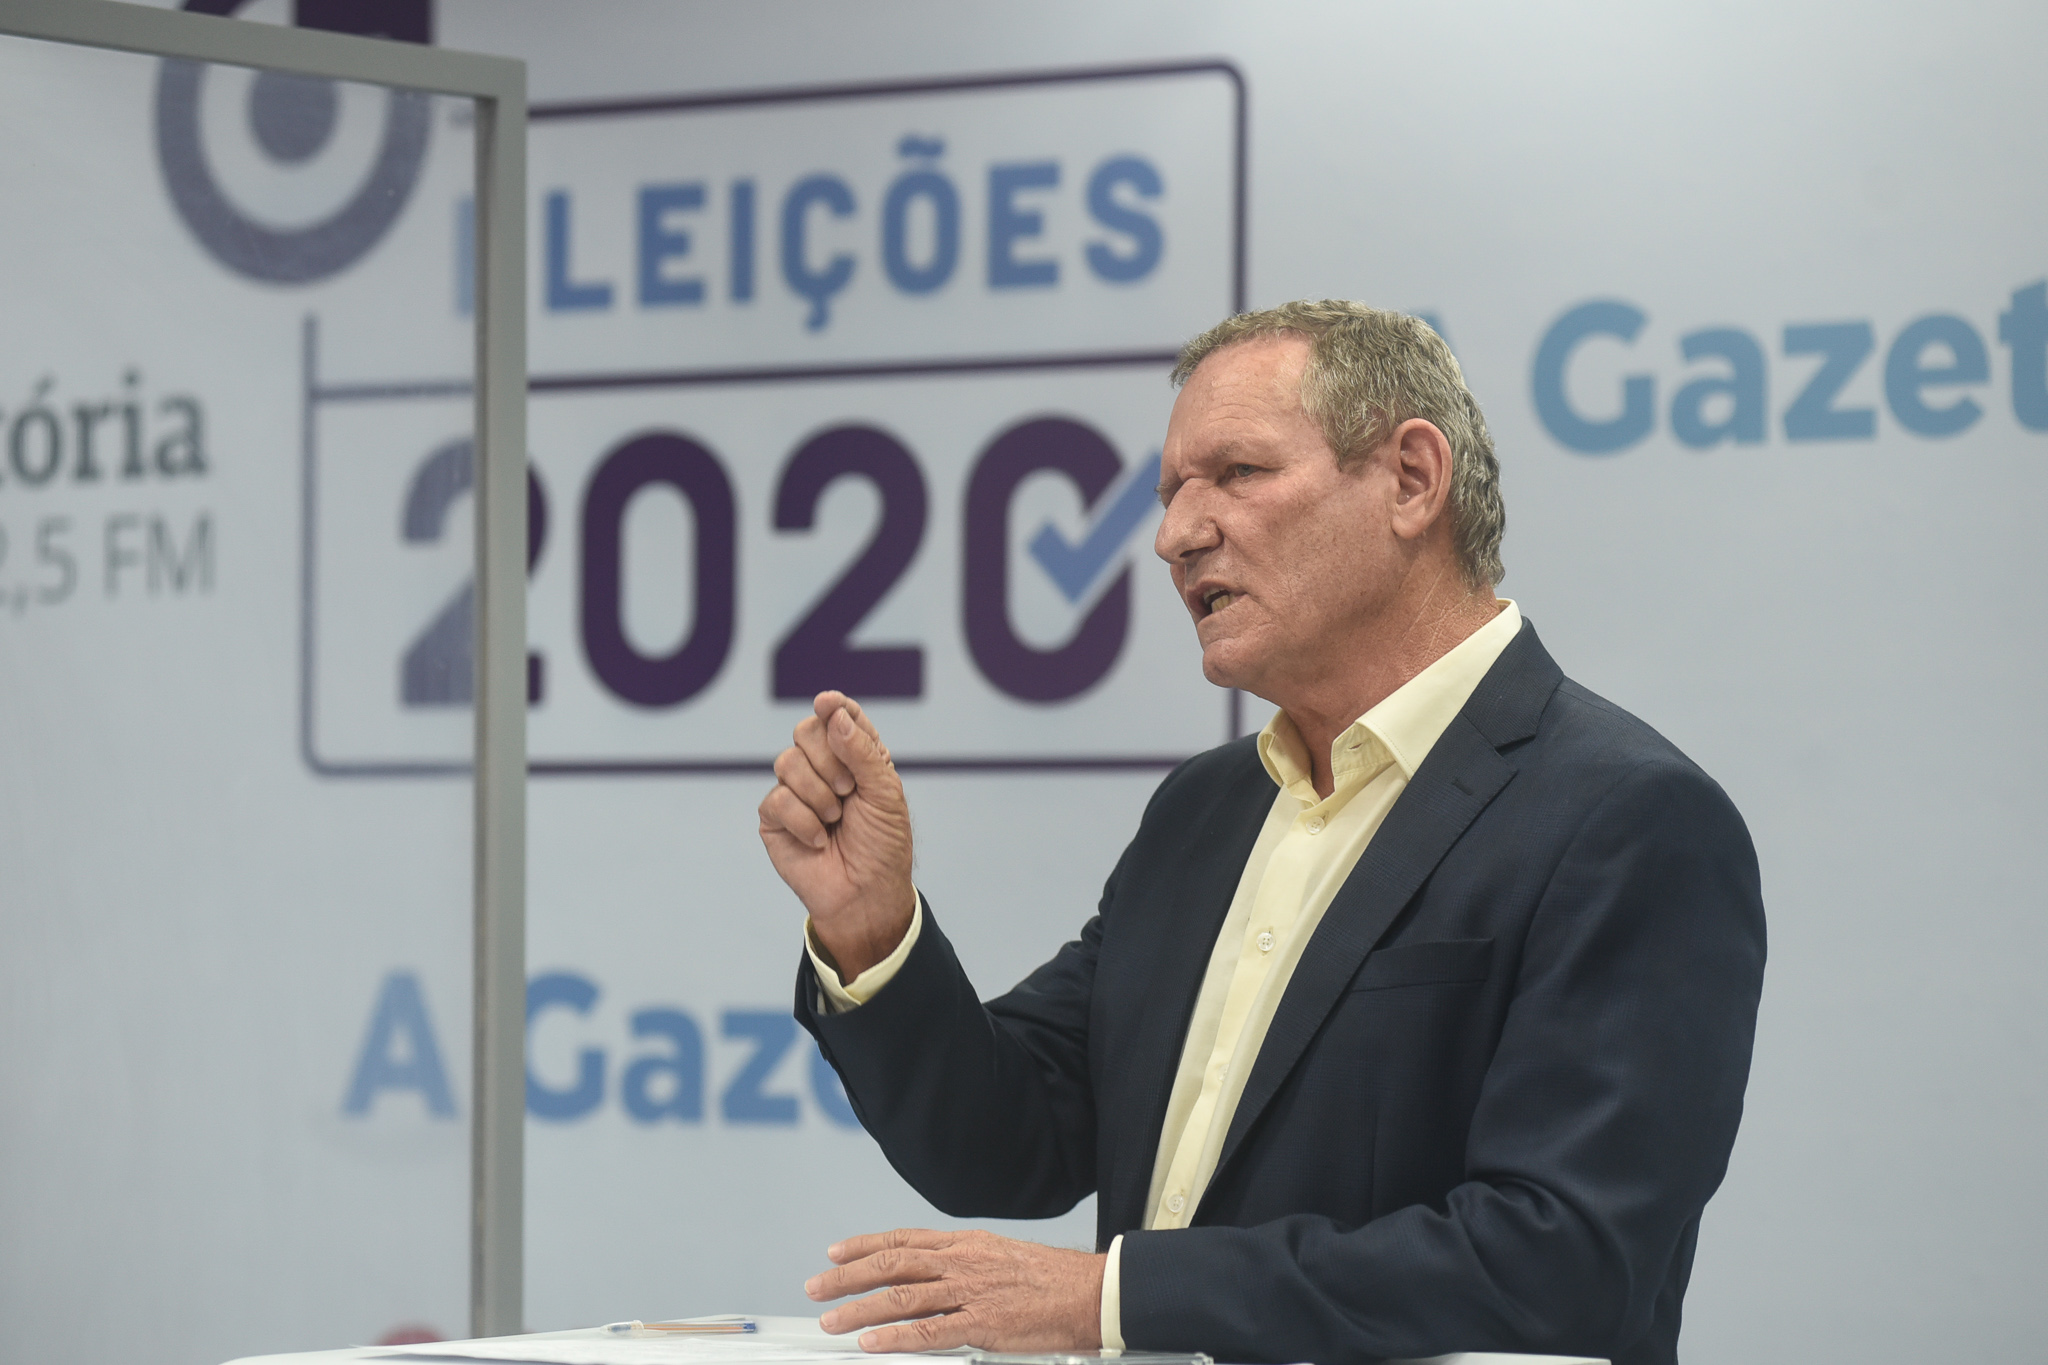 João Coser, candidato a prefeito de Vitória pelo Partido dos Trabalhadores no debate promovido pelo site A Gazeta e pela rádio CBN